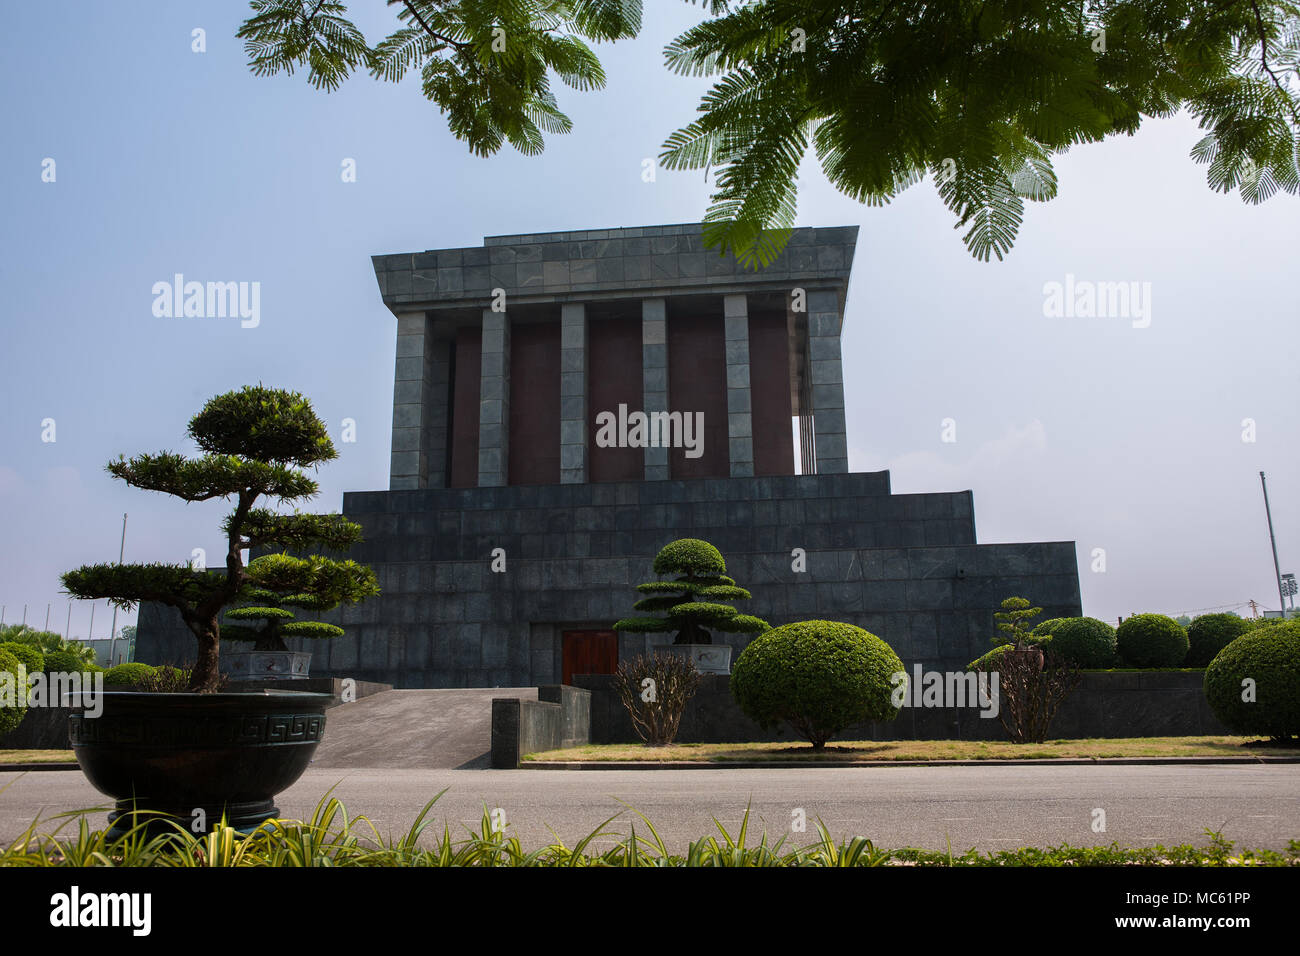 The impressive front of Ho Chi Minh's Mausoleum, Hùng Vương, Điện Biên, Ba Đình, Hà Nội, Vietnam Stock Photo